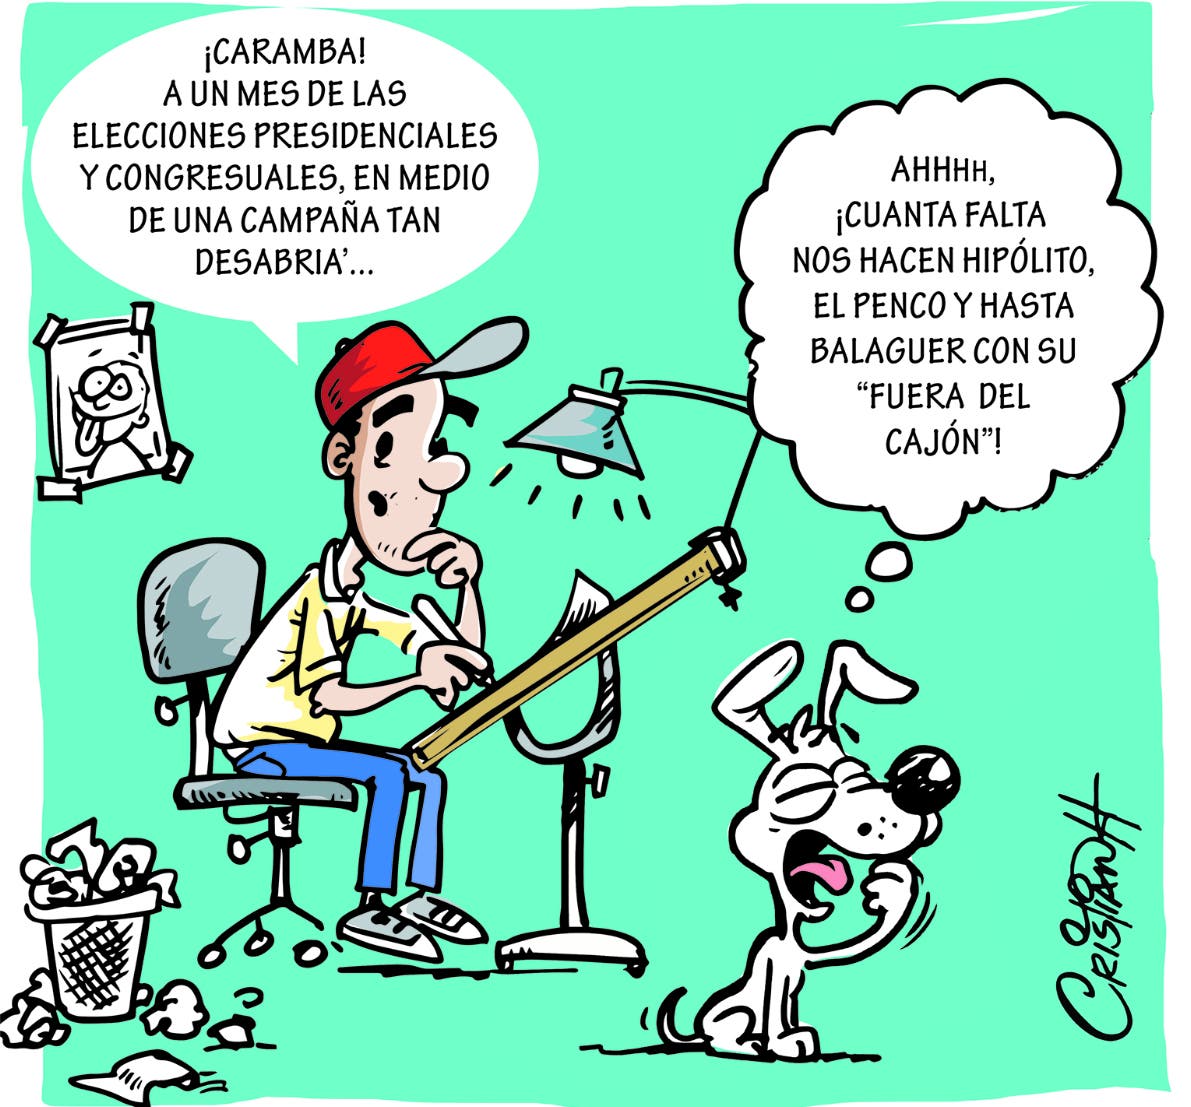 #Caricatura El carrusel de la vida
Por: @criscaricaturas 
#PeriódicoElDía  #caricaturaElDía 
Más en: eldia.com.do/el-carrusel-de…